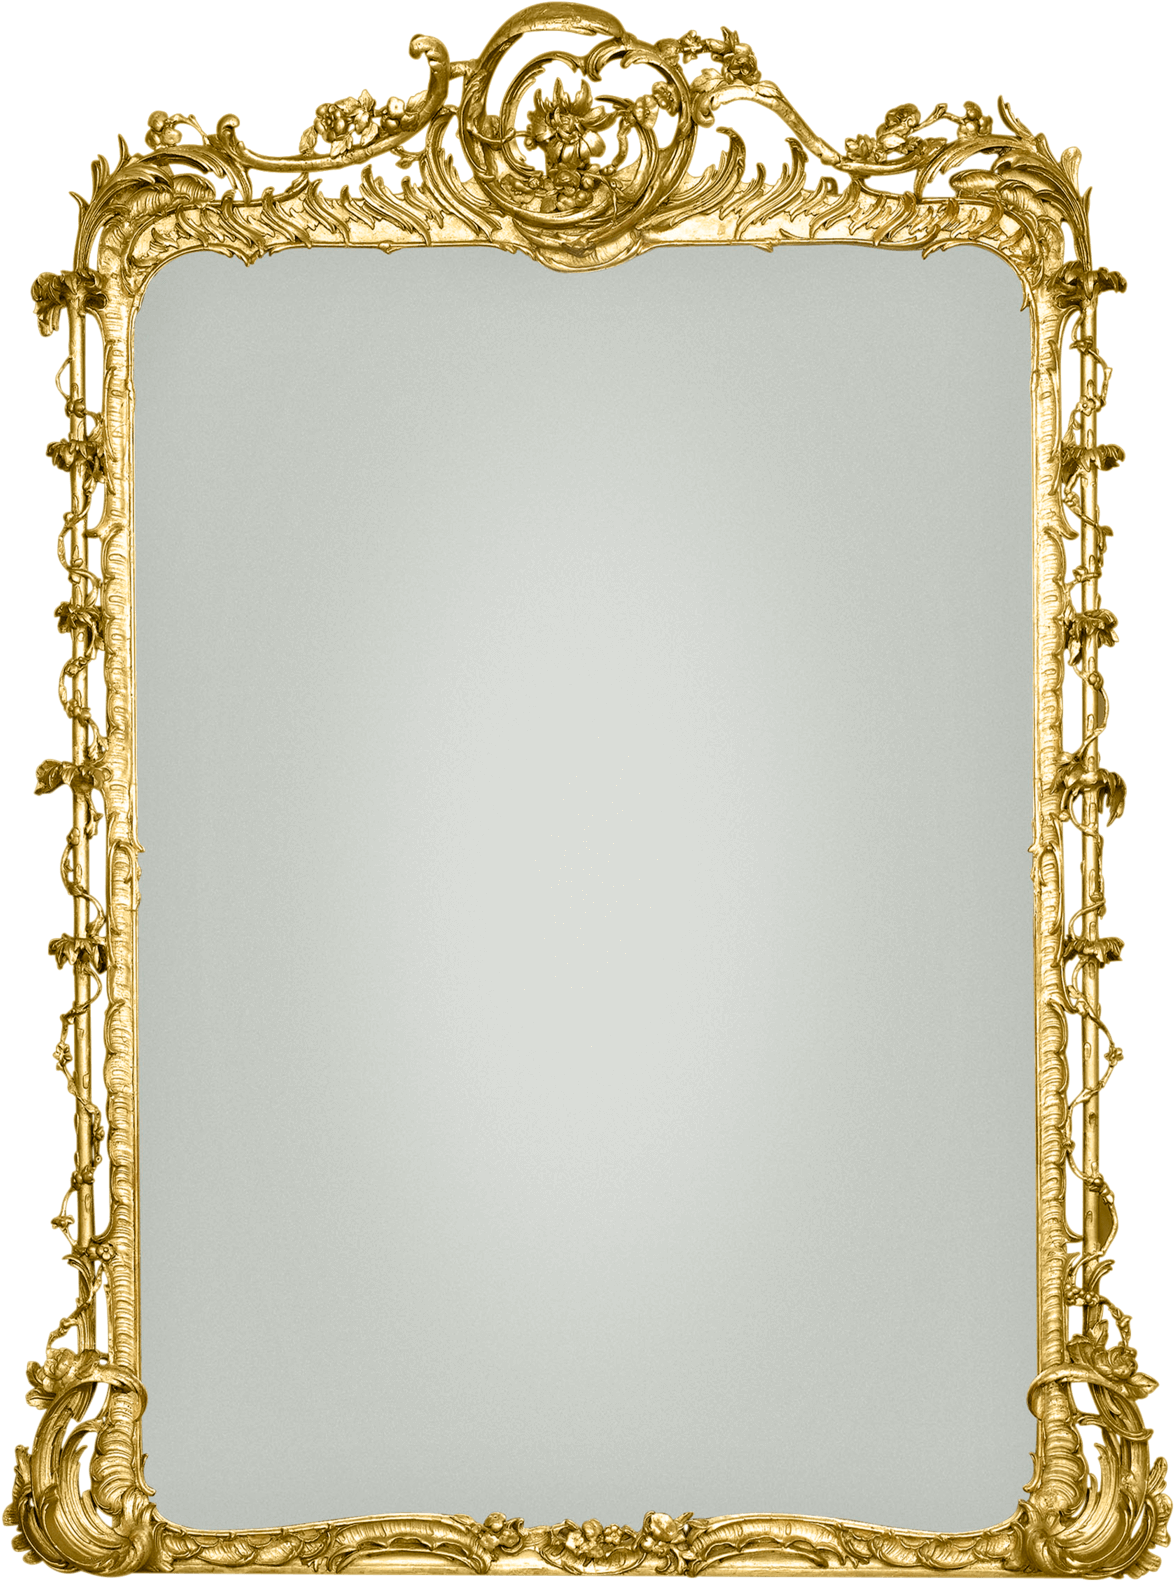 Ornate Golden Antique Mirror Frame PNG image